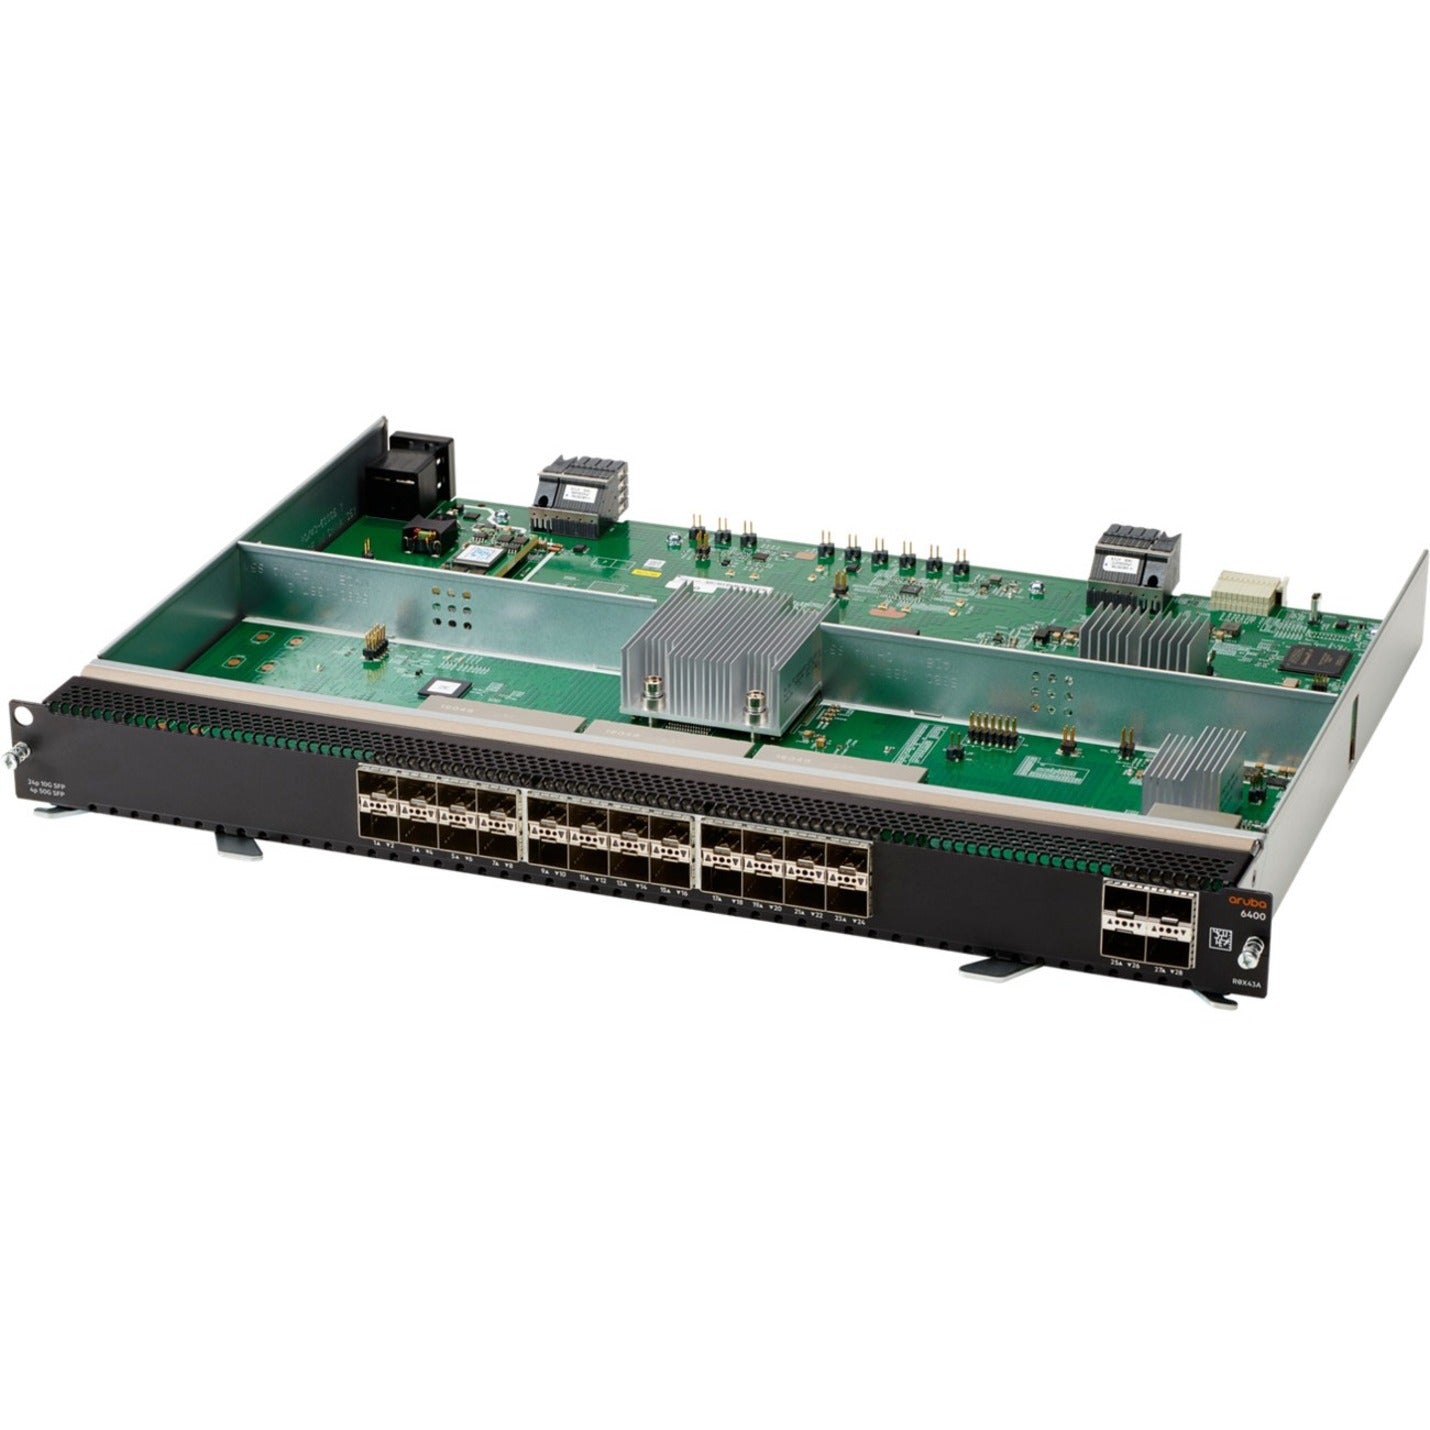 Aruba R0X43A 6400 24-port SFP+ and 4-port SFP56 Module, Optical Fiber Expansion Module